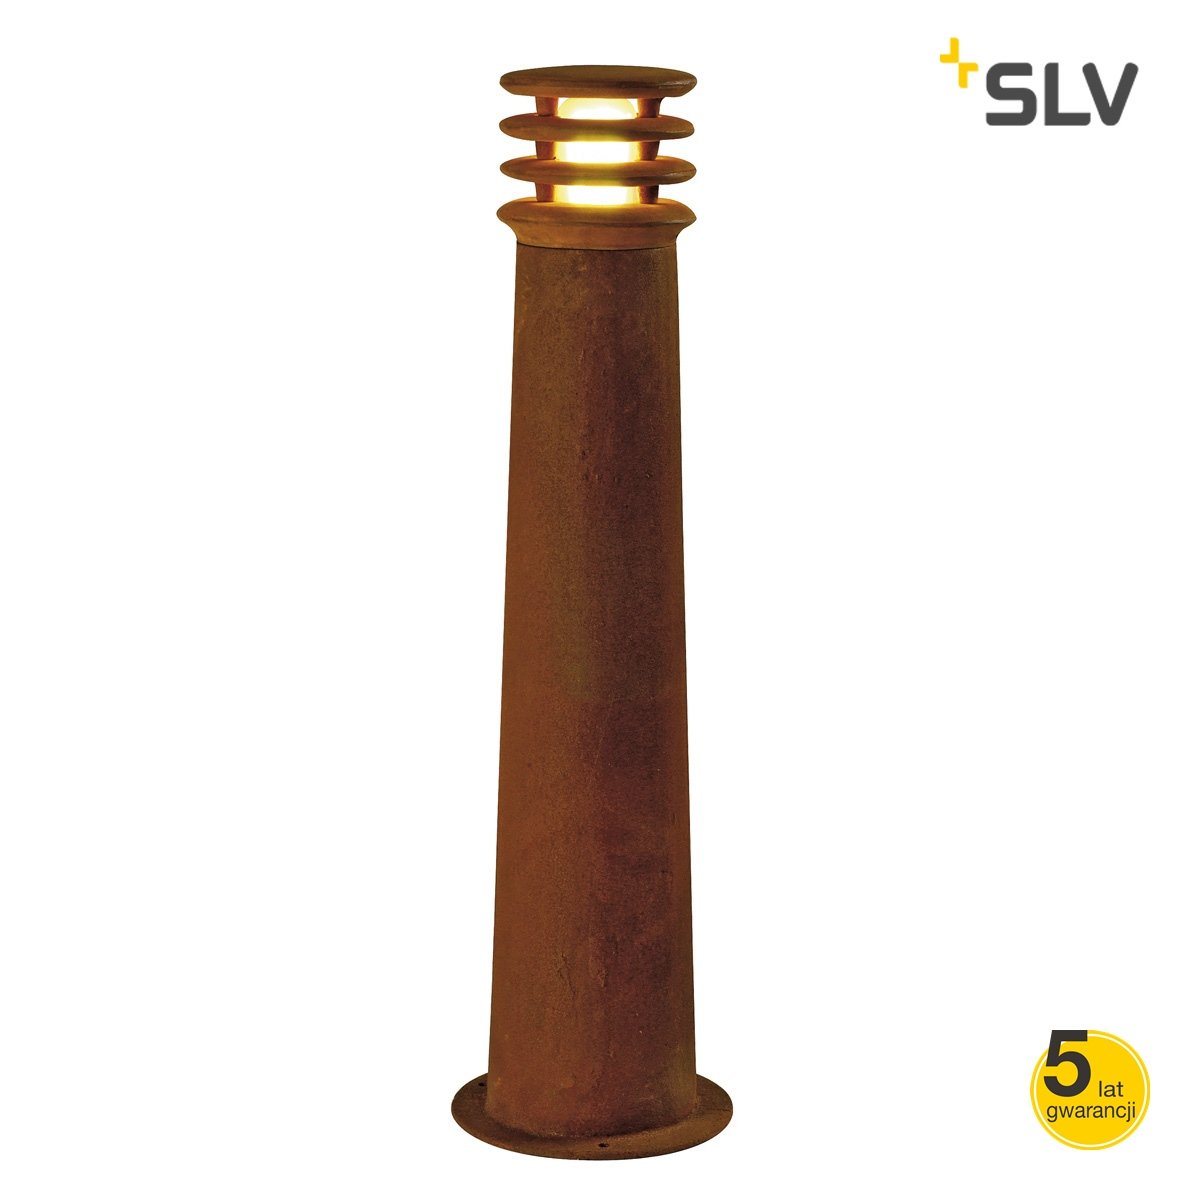 SLV by Spotline Lampa stojąca - Rusty 70 229021 229021